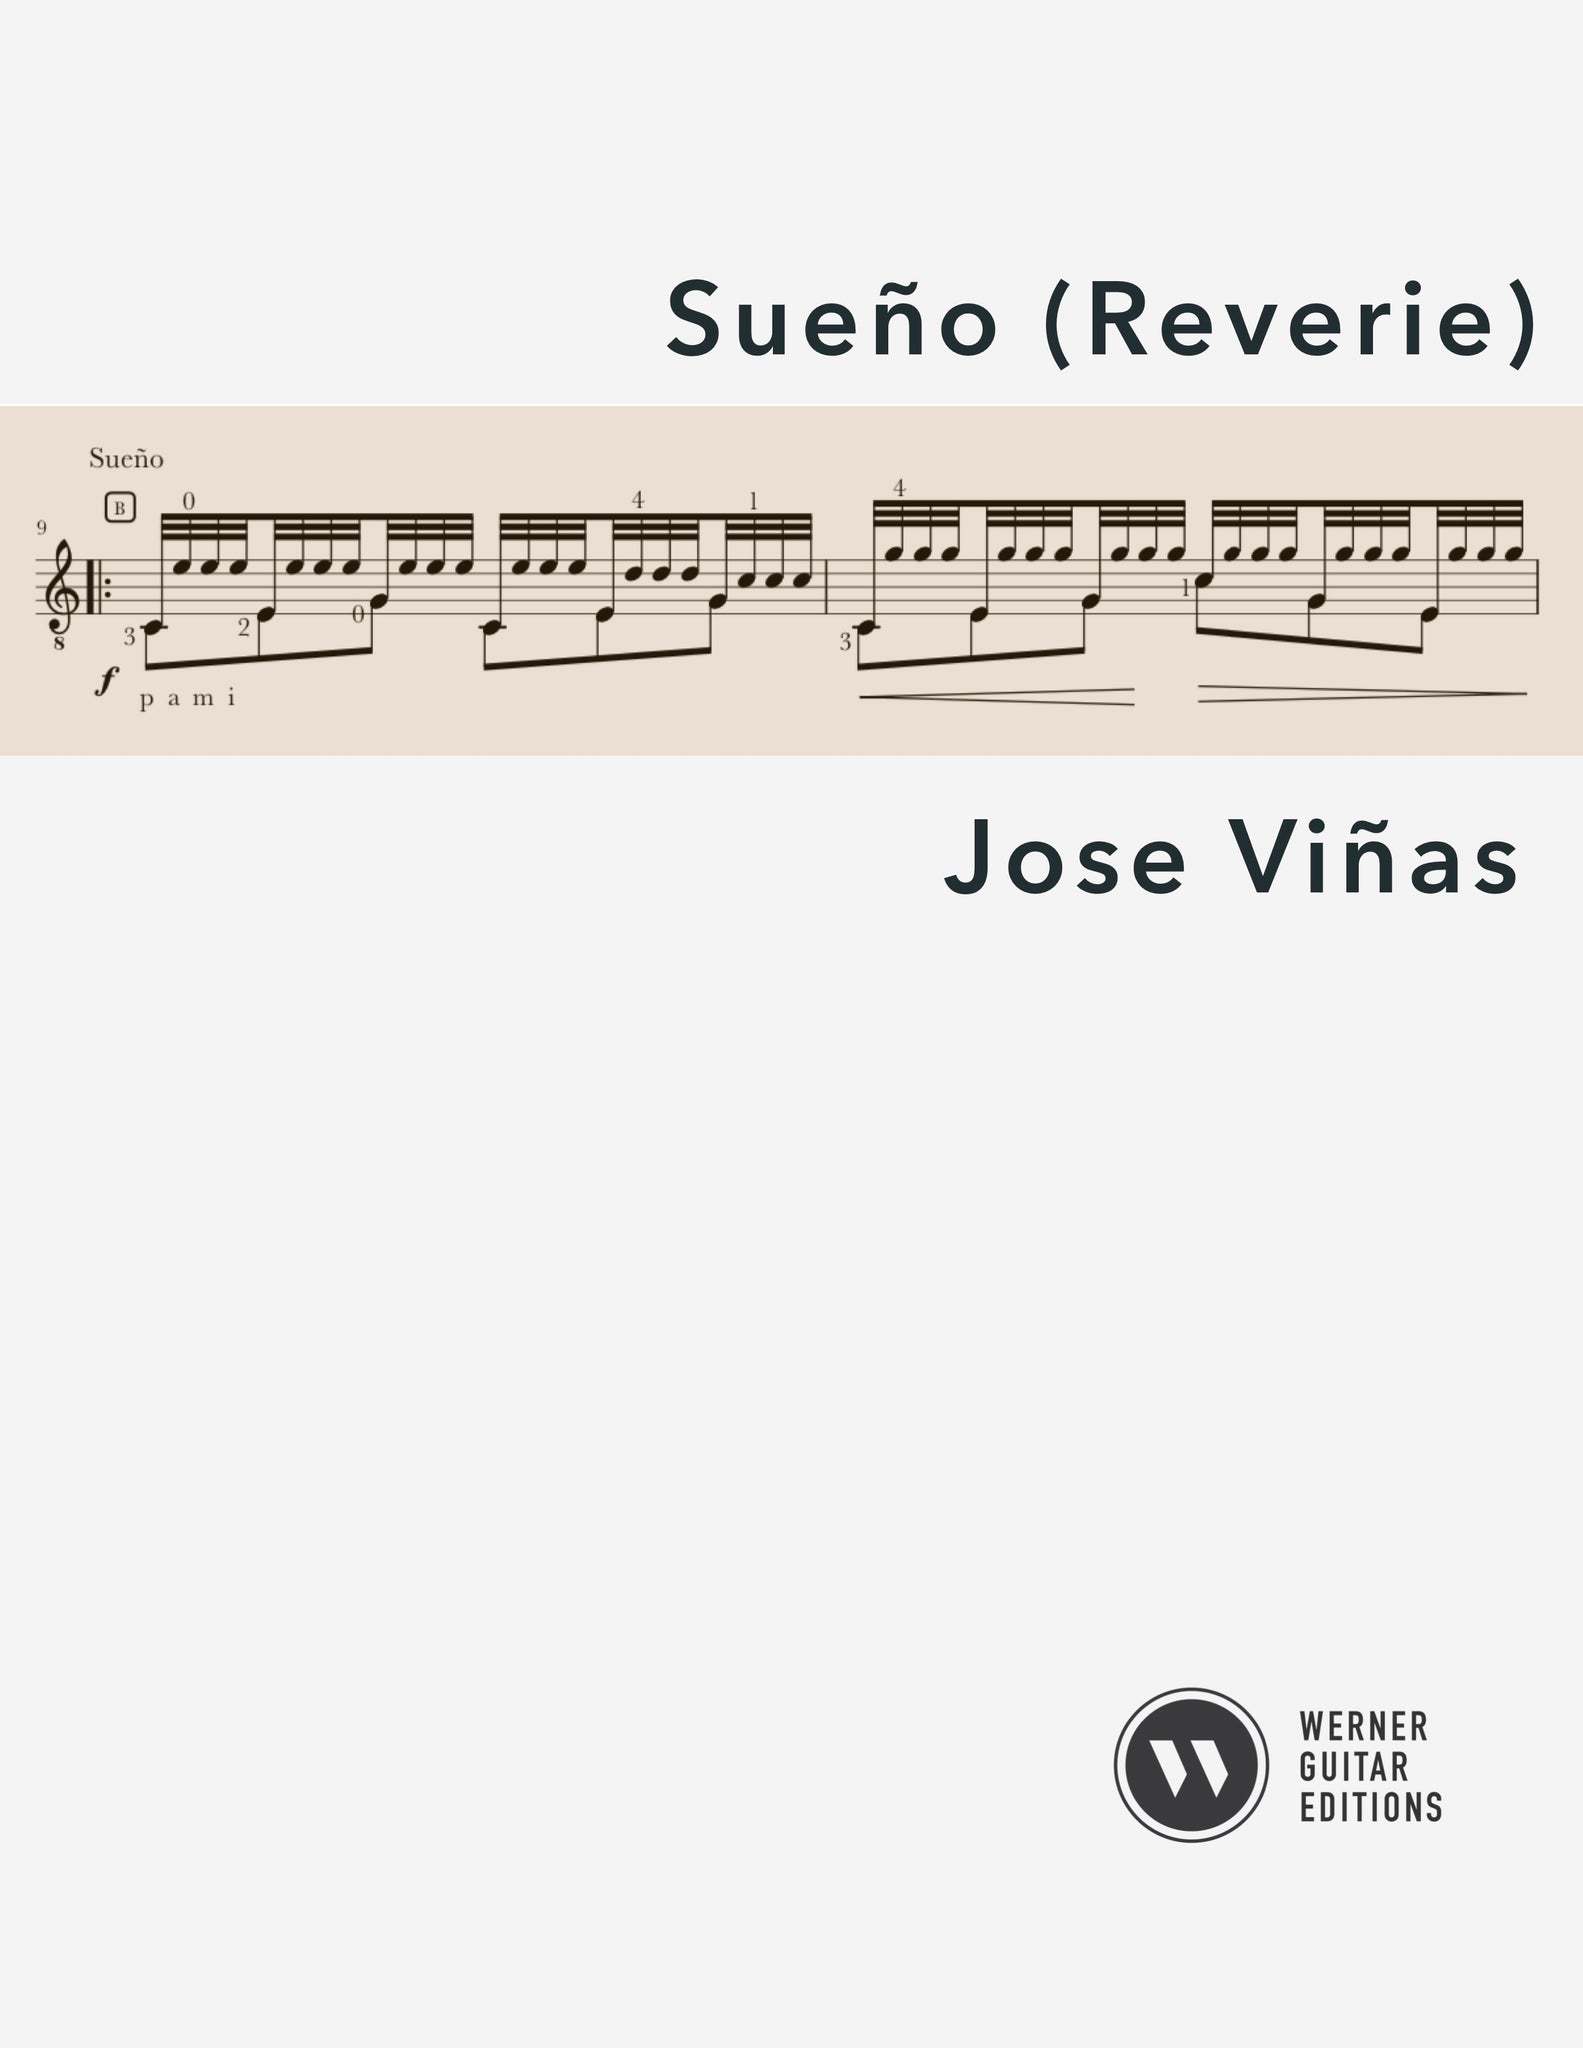 El Sueño (Reverie para Guitarra) for Guitar by José Viñas 